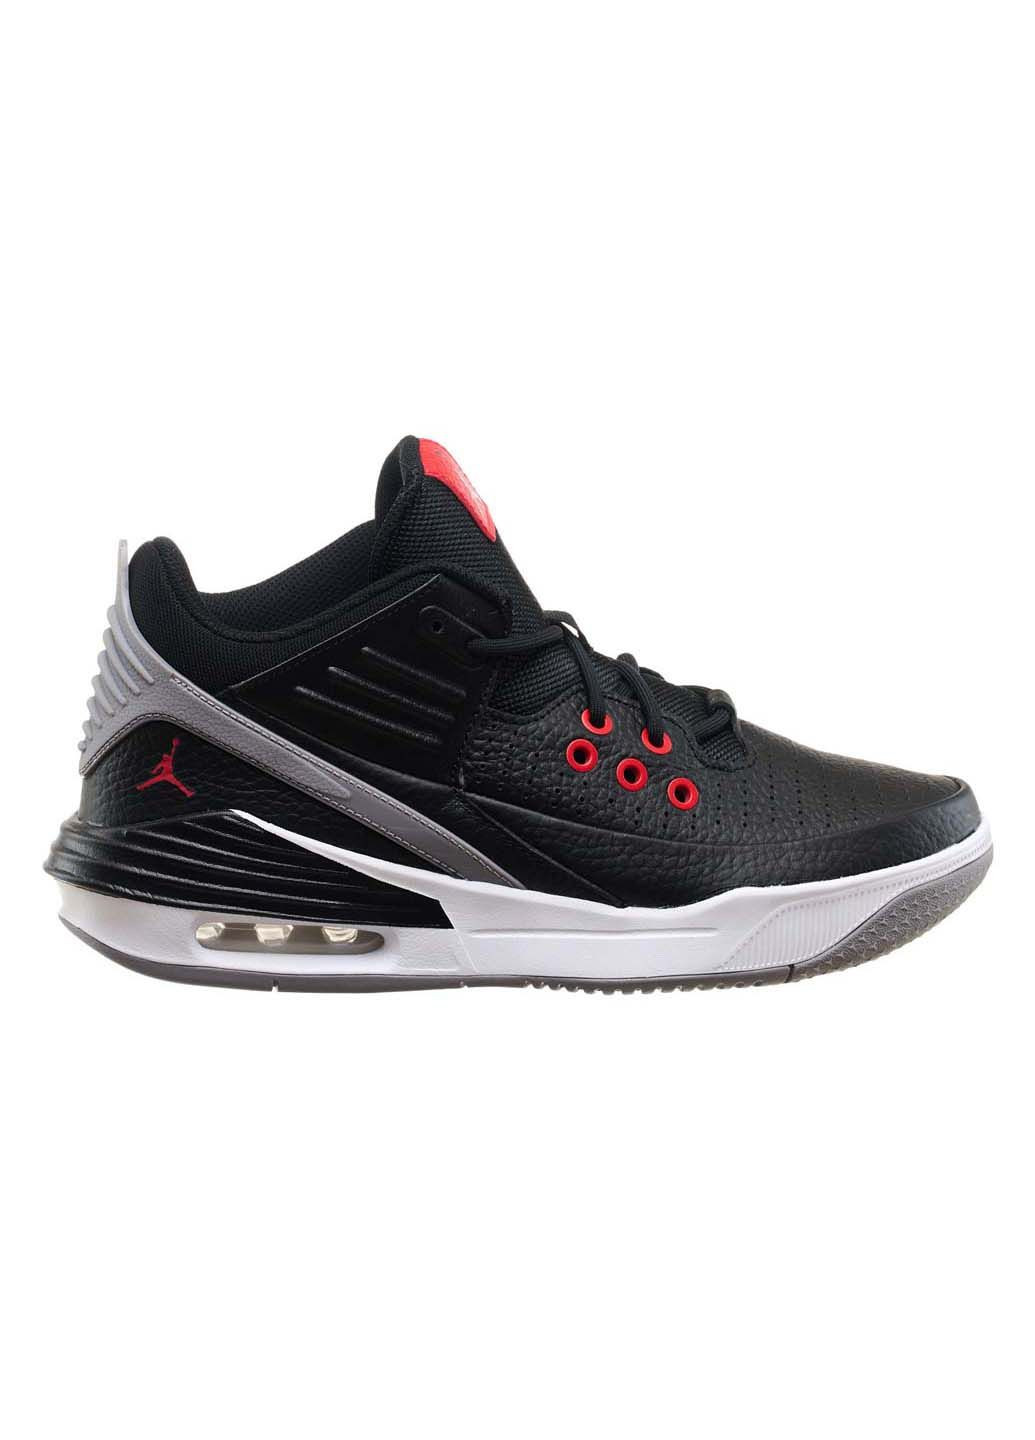 Черные демисезонные кроссовки мужские max aura 5 Jordan